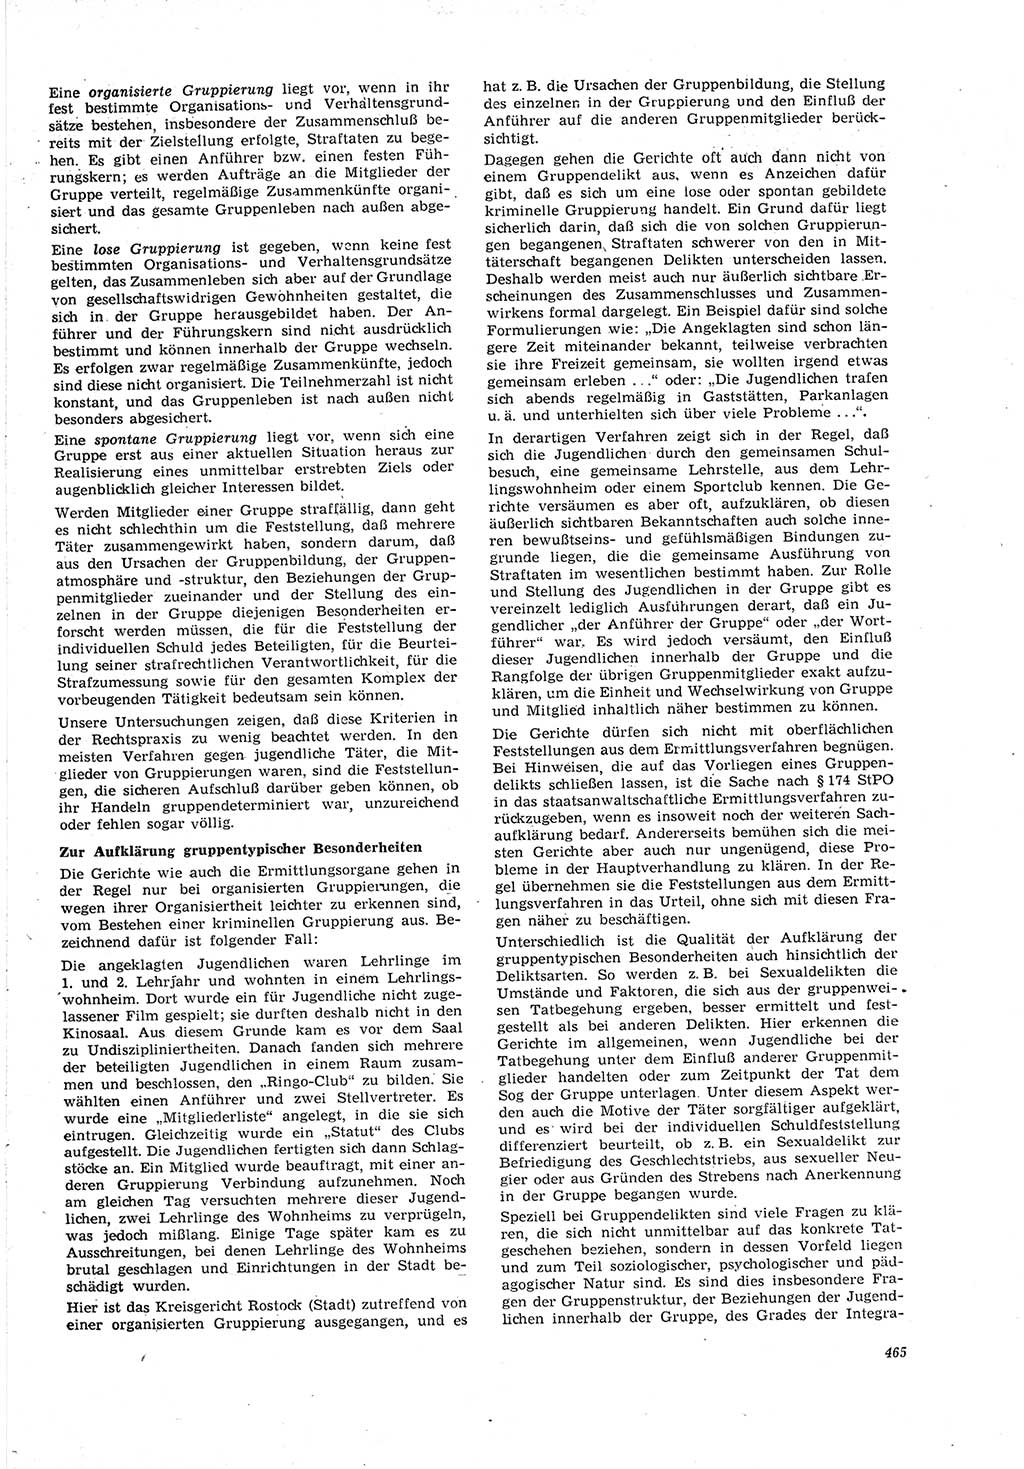 Neue Justiz (NJ), Zeitschrift für Recht und Rechtswissenschaft [Deutsche Demokratische Republik (DDR)], 21. Jahrgang 1967, Seite 465 (NJ DDR 1967, S. 465)